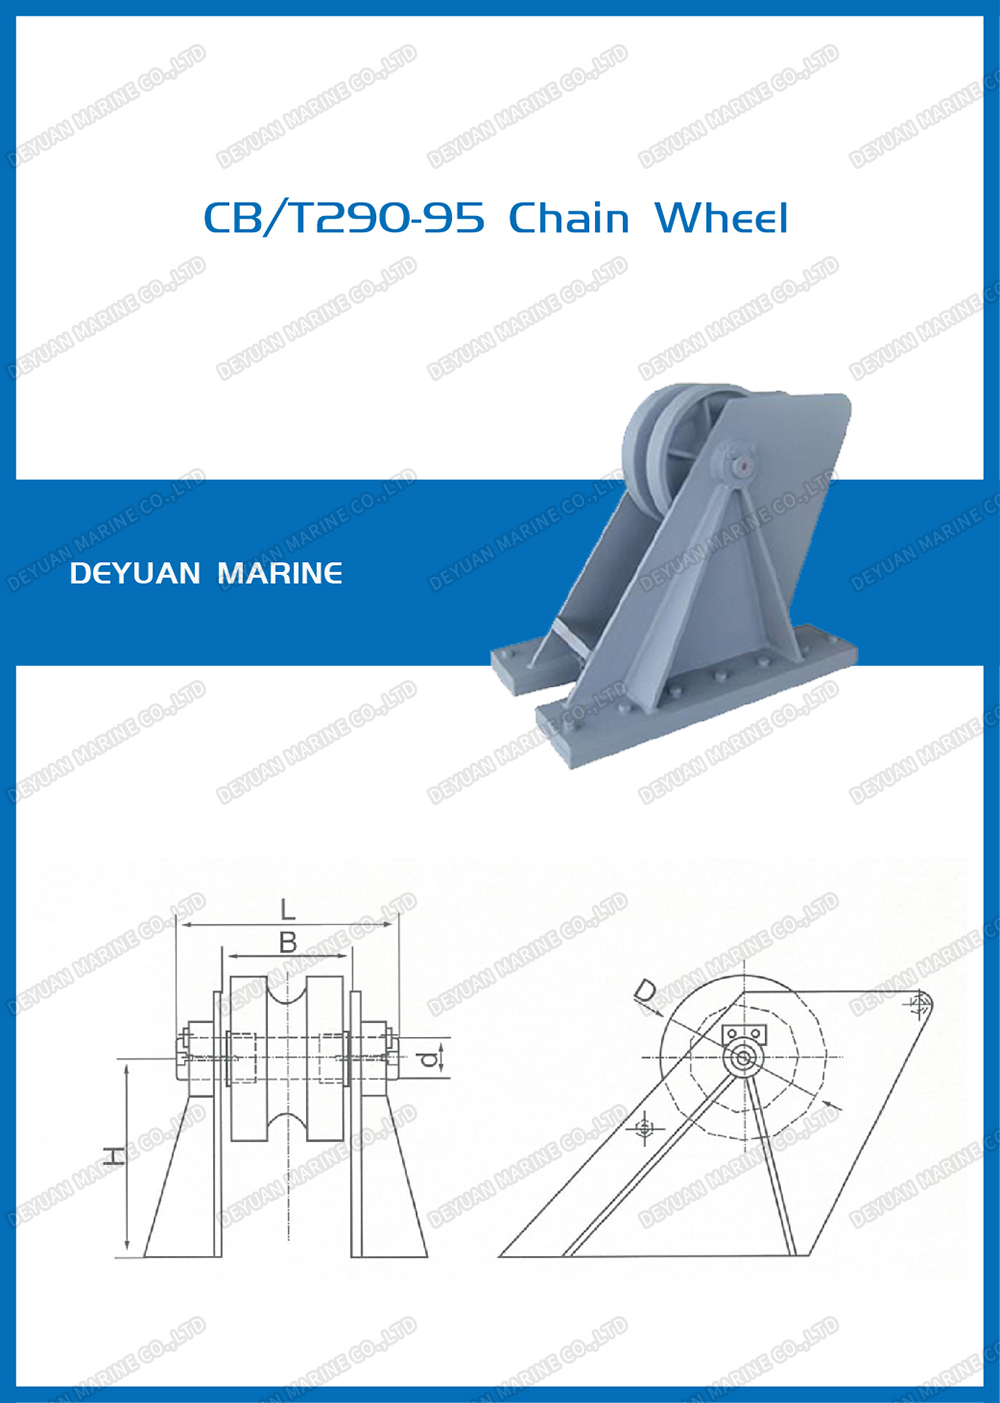 CB/T290-95 Chain Wheel china deyuan marine